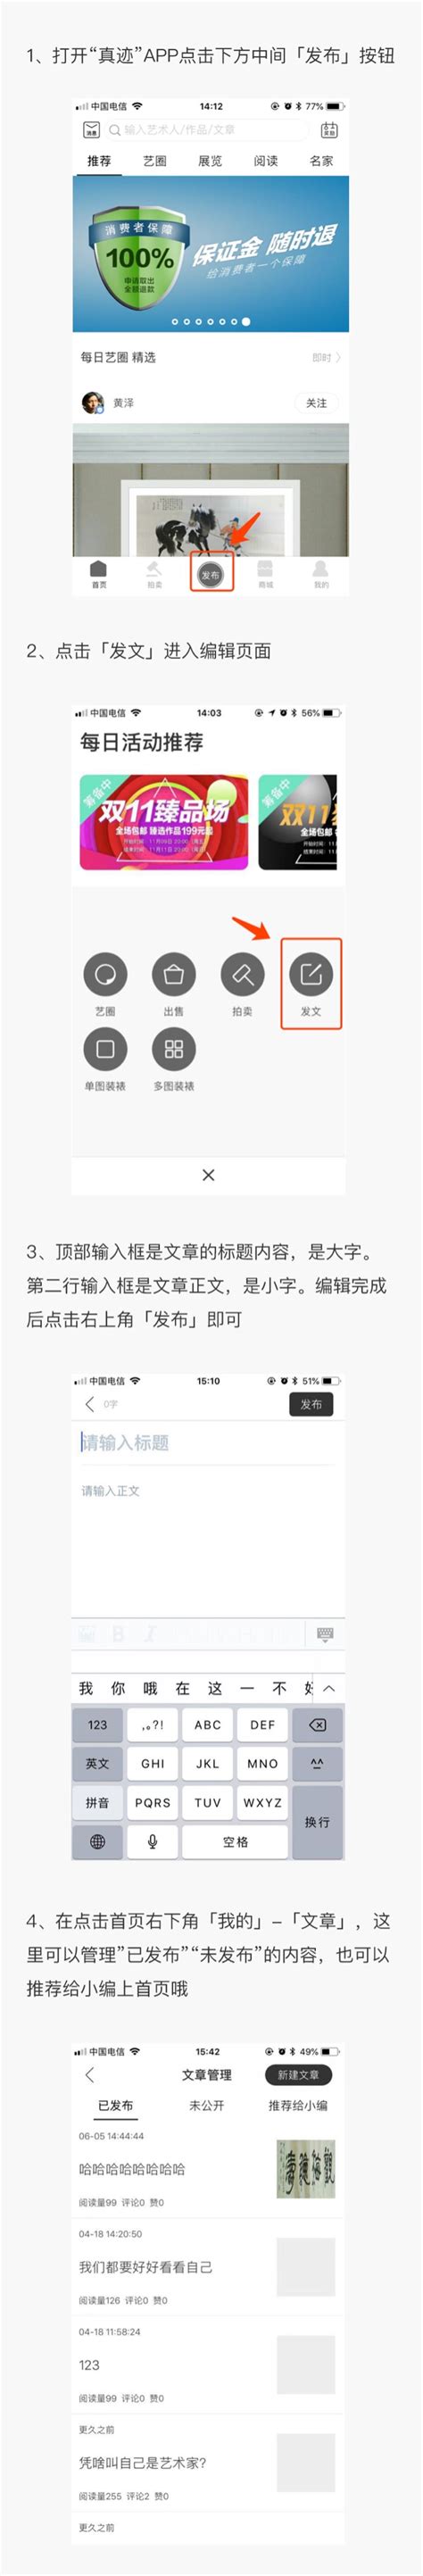 文章发布操作说明-中国大学生网